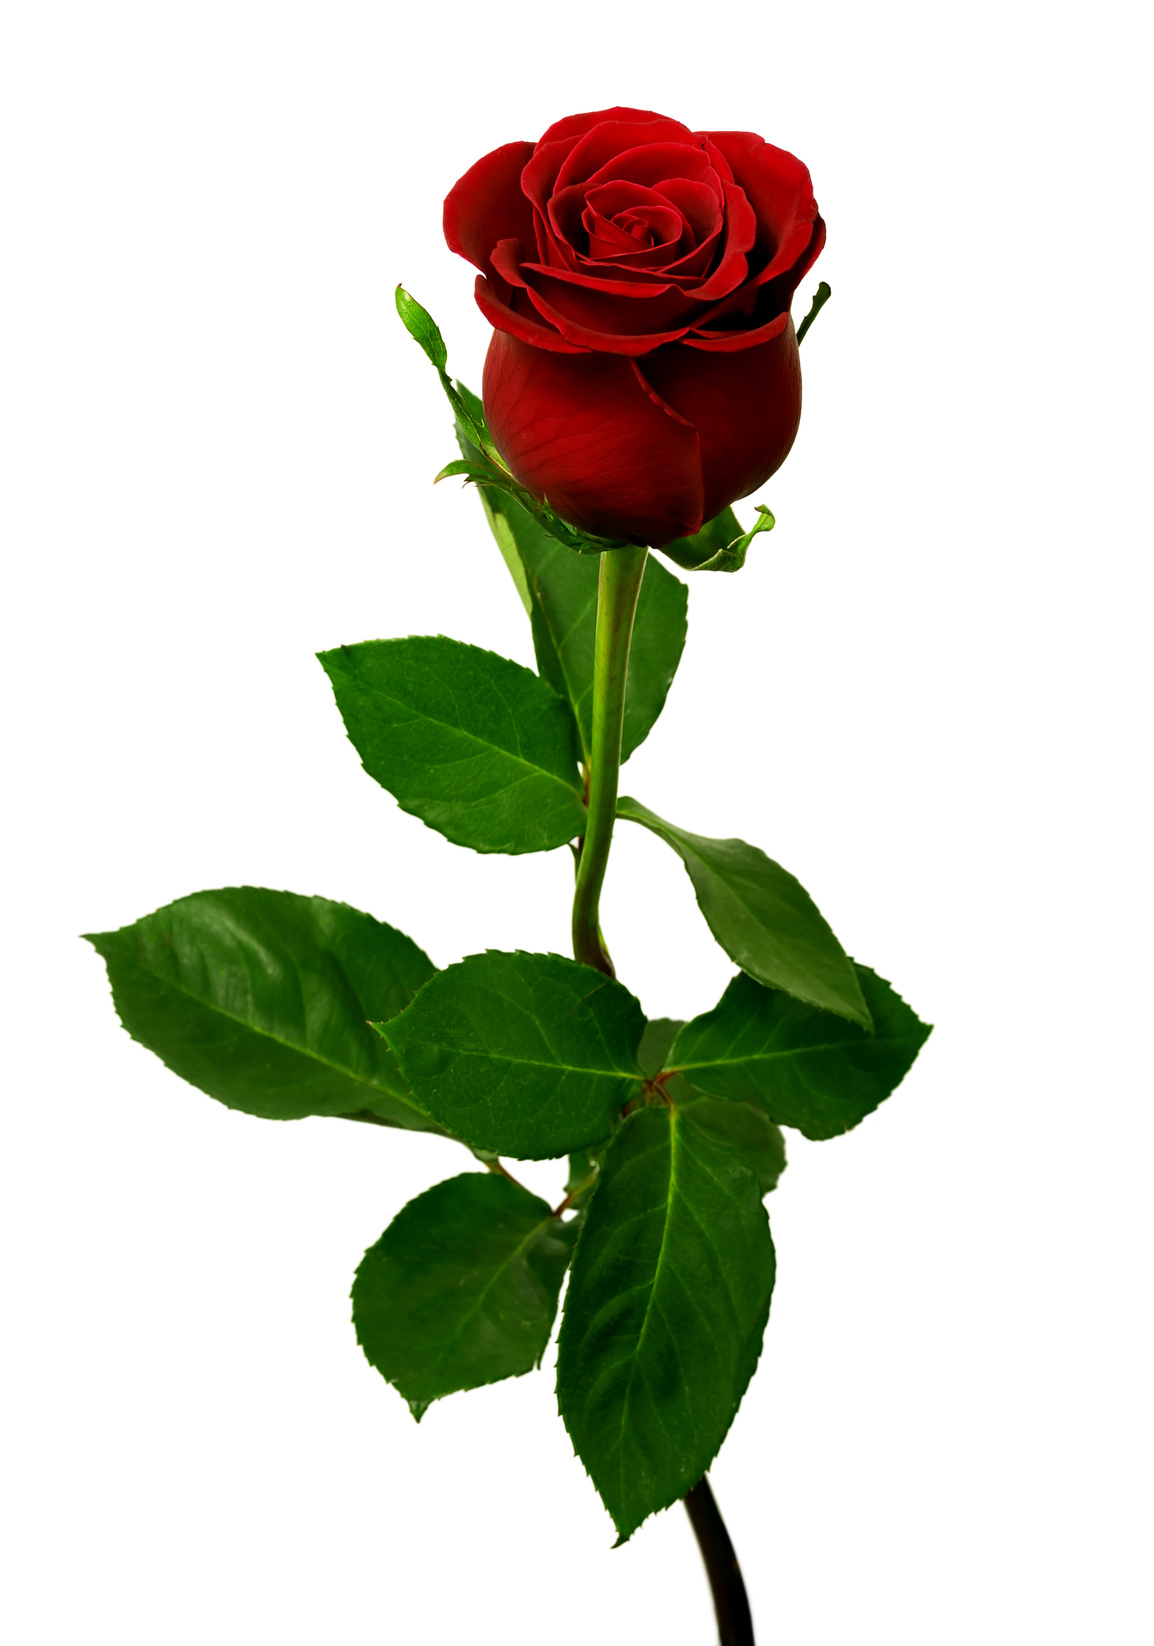 Mandorla-Natursubstanz: Rote Rose